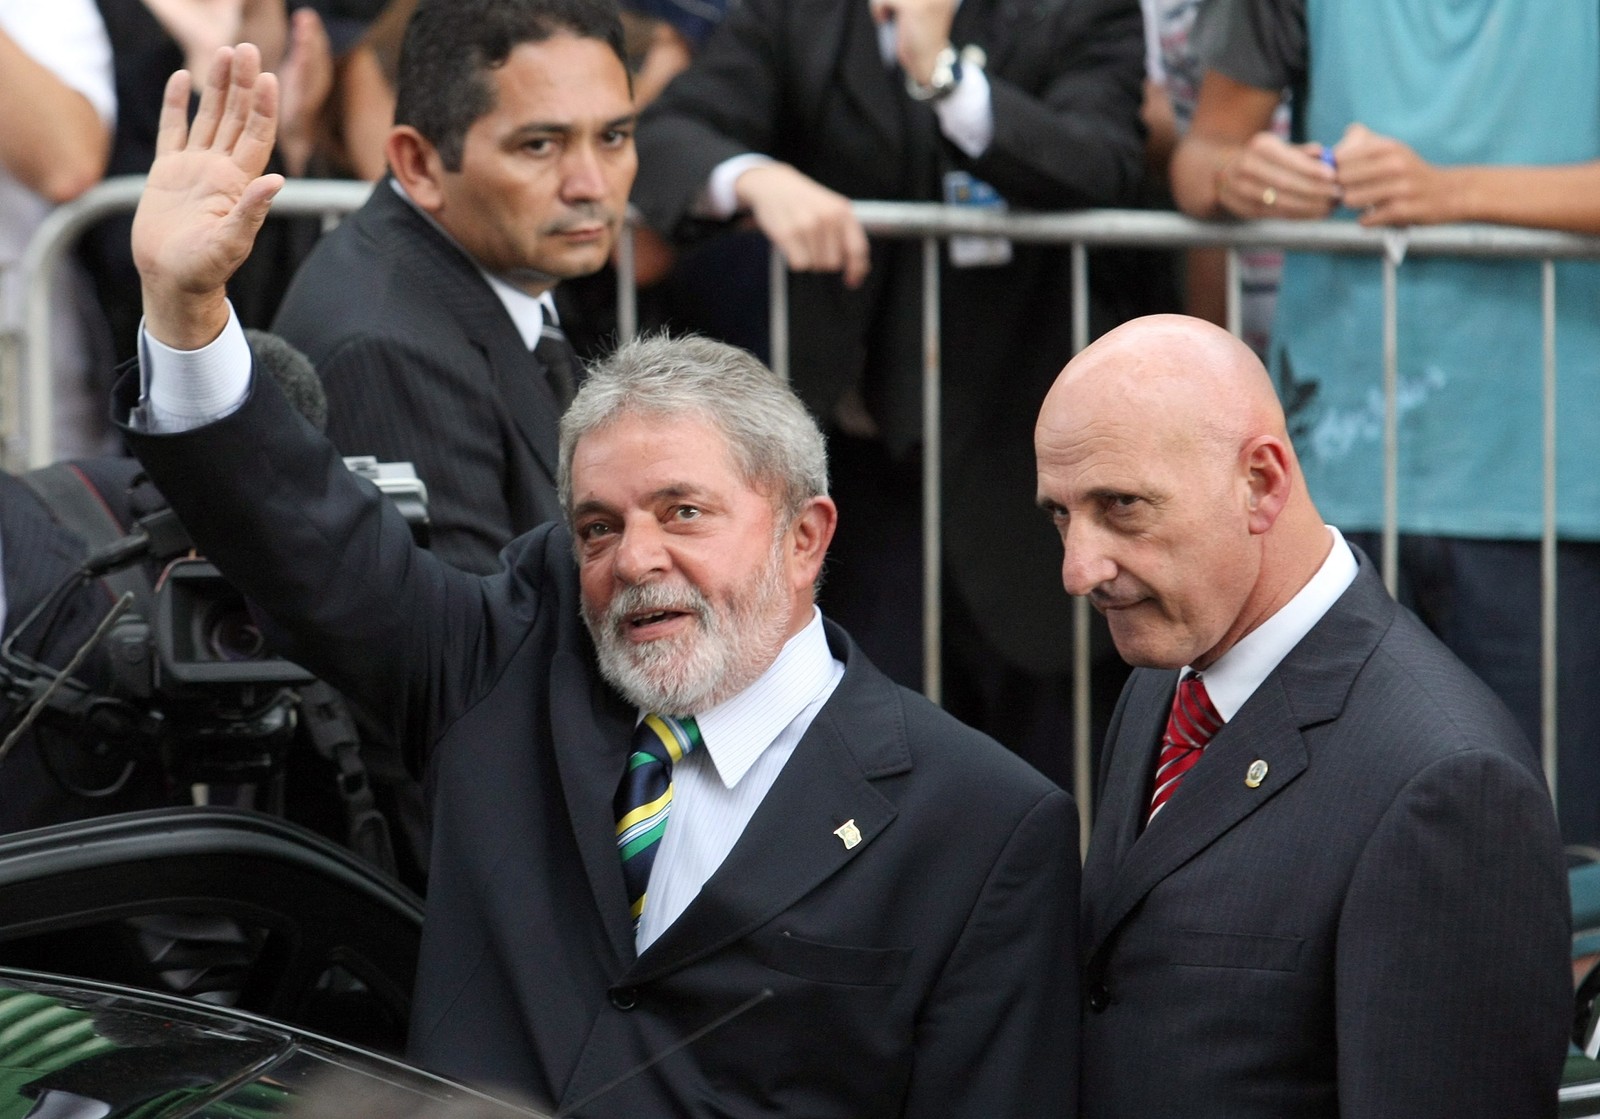 O presidente Lula, ao lado do general, à época chefe da segurança presidencial, quando chegava para a posse do novo ministro do STF, Dias Toffoli.  — Foto: Ailton de Freitas/Agência O Globo